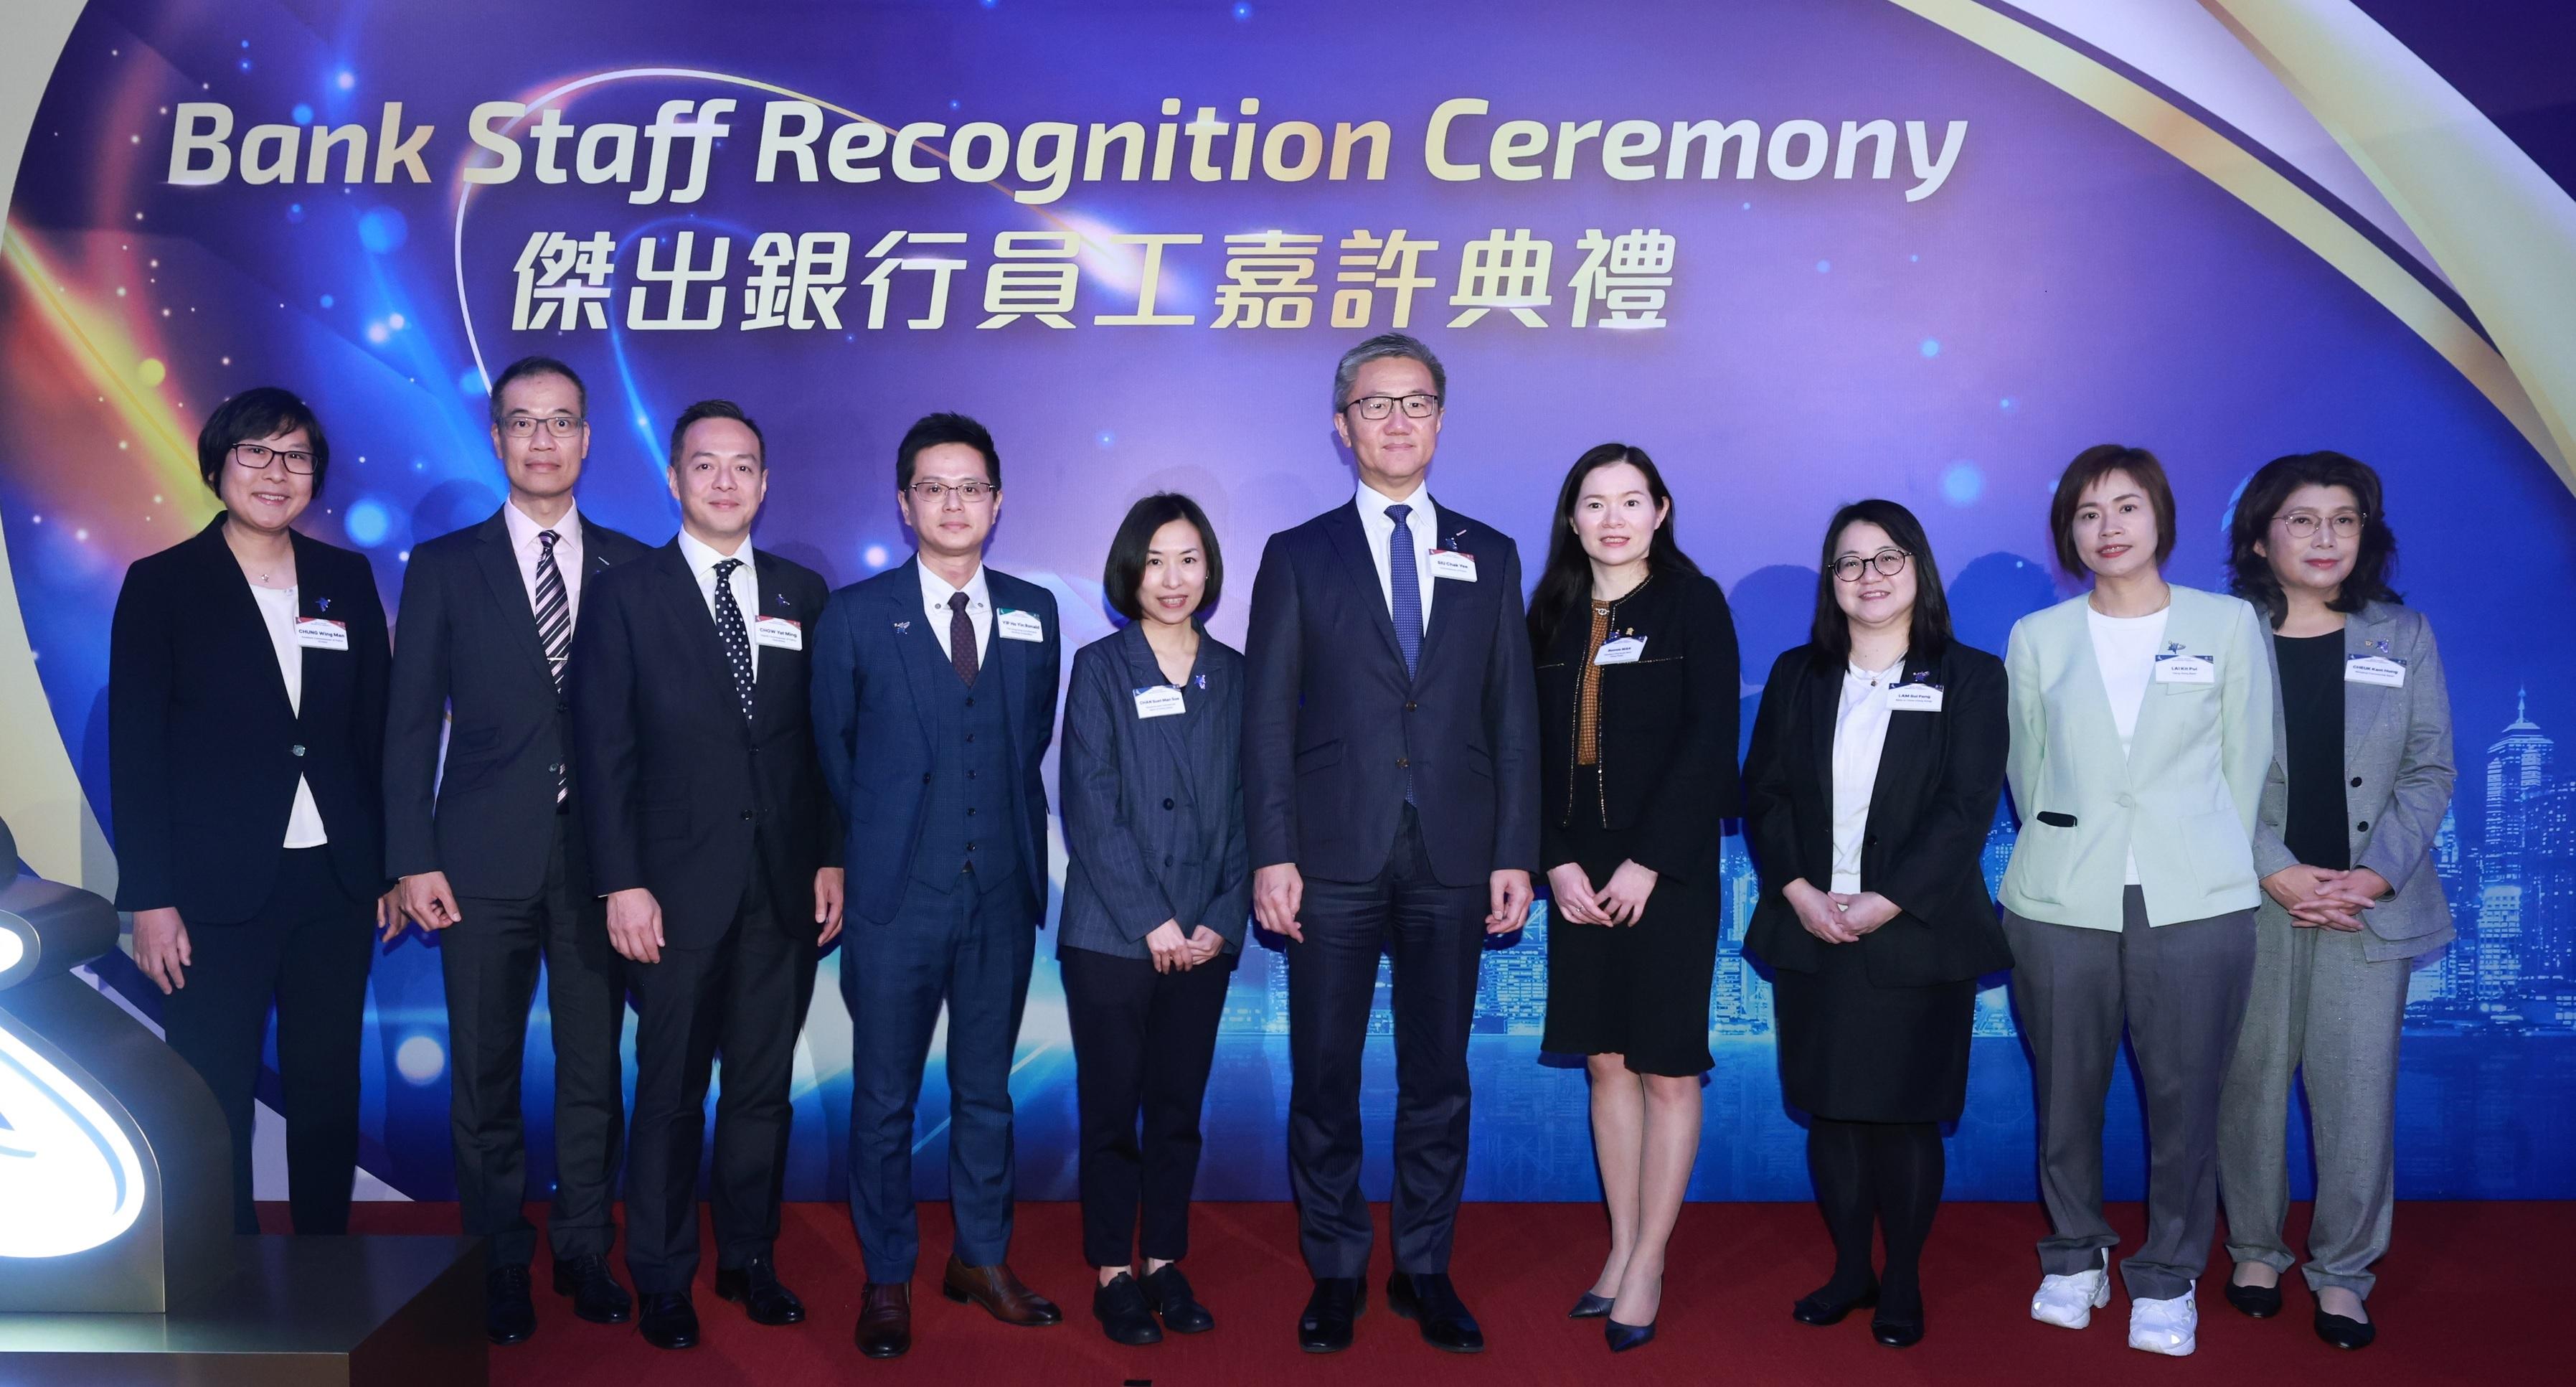 警務處處長蕭澤頤與「傑出銀行員工大奬」得獎者與其他嘉賓合照。